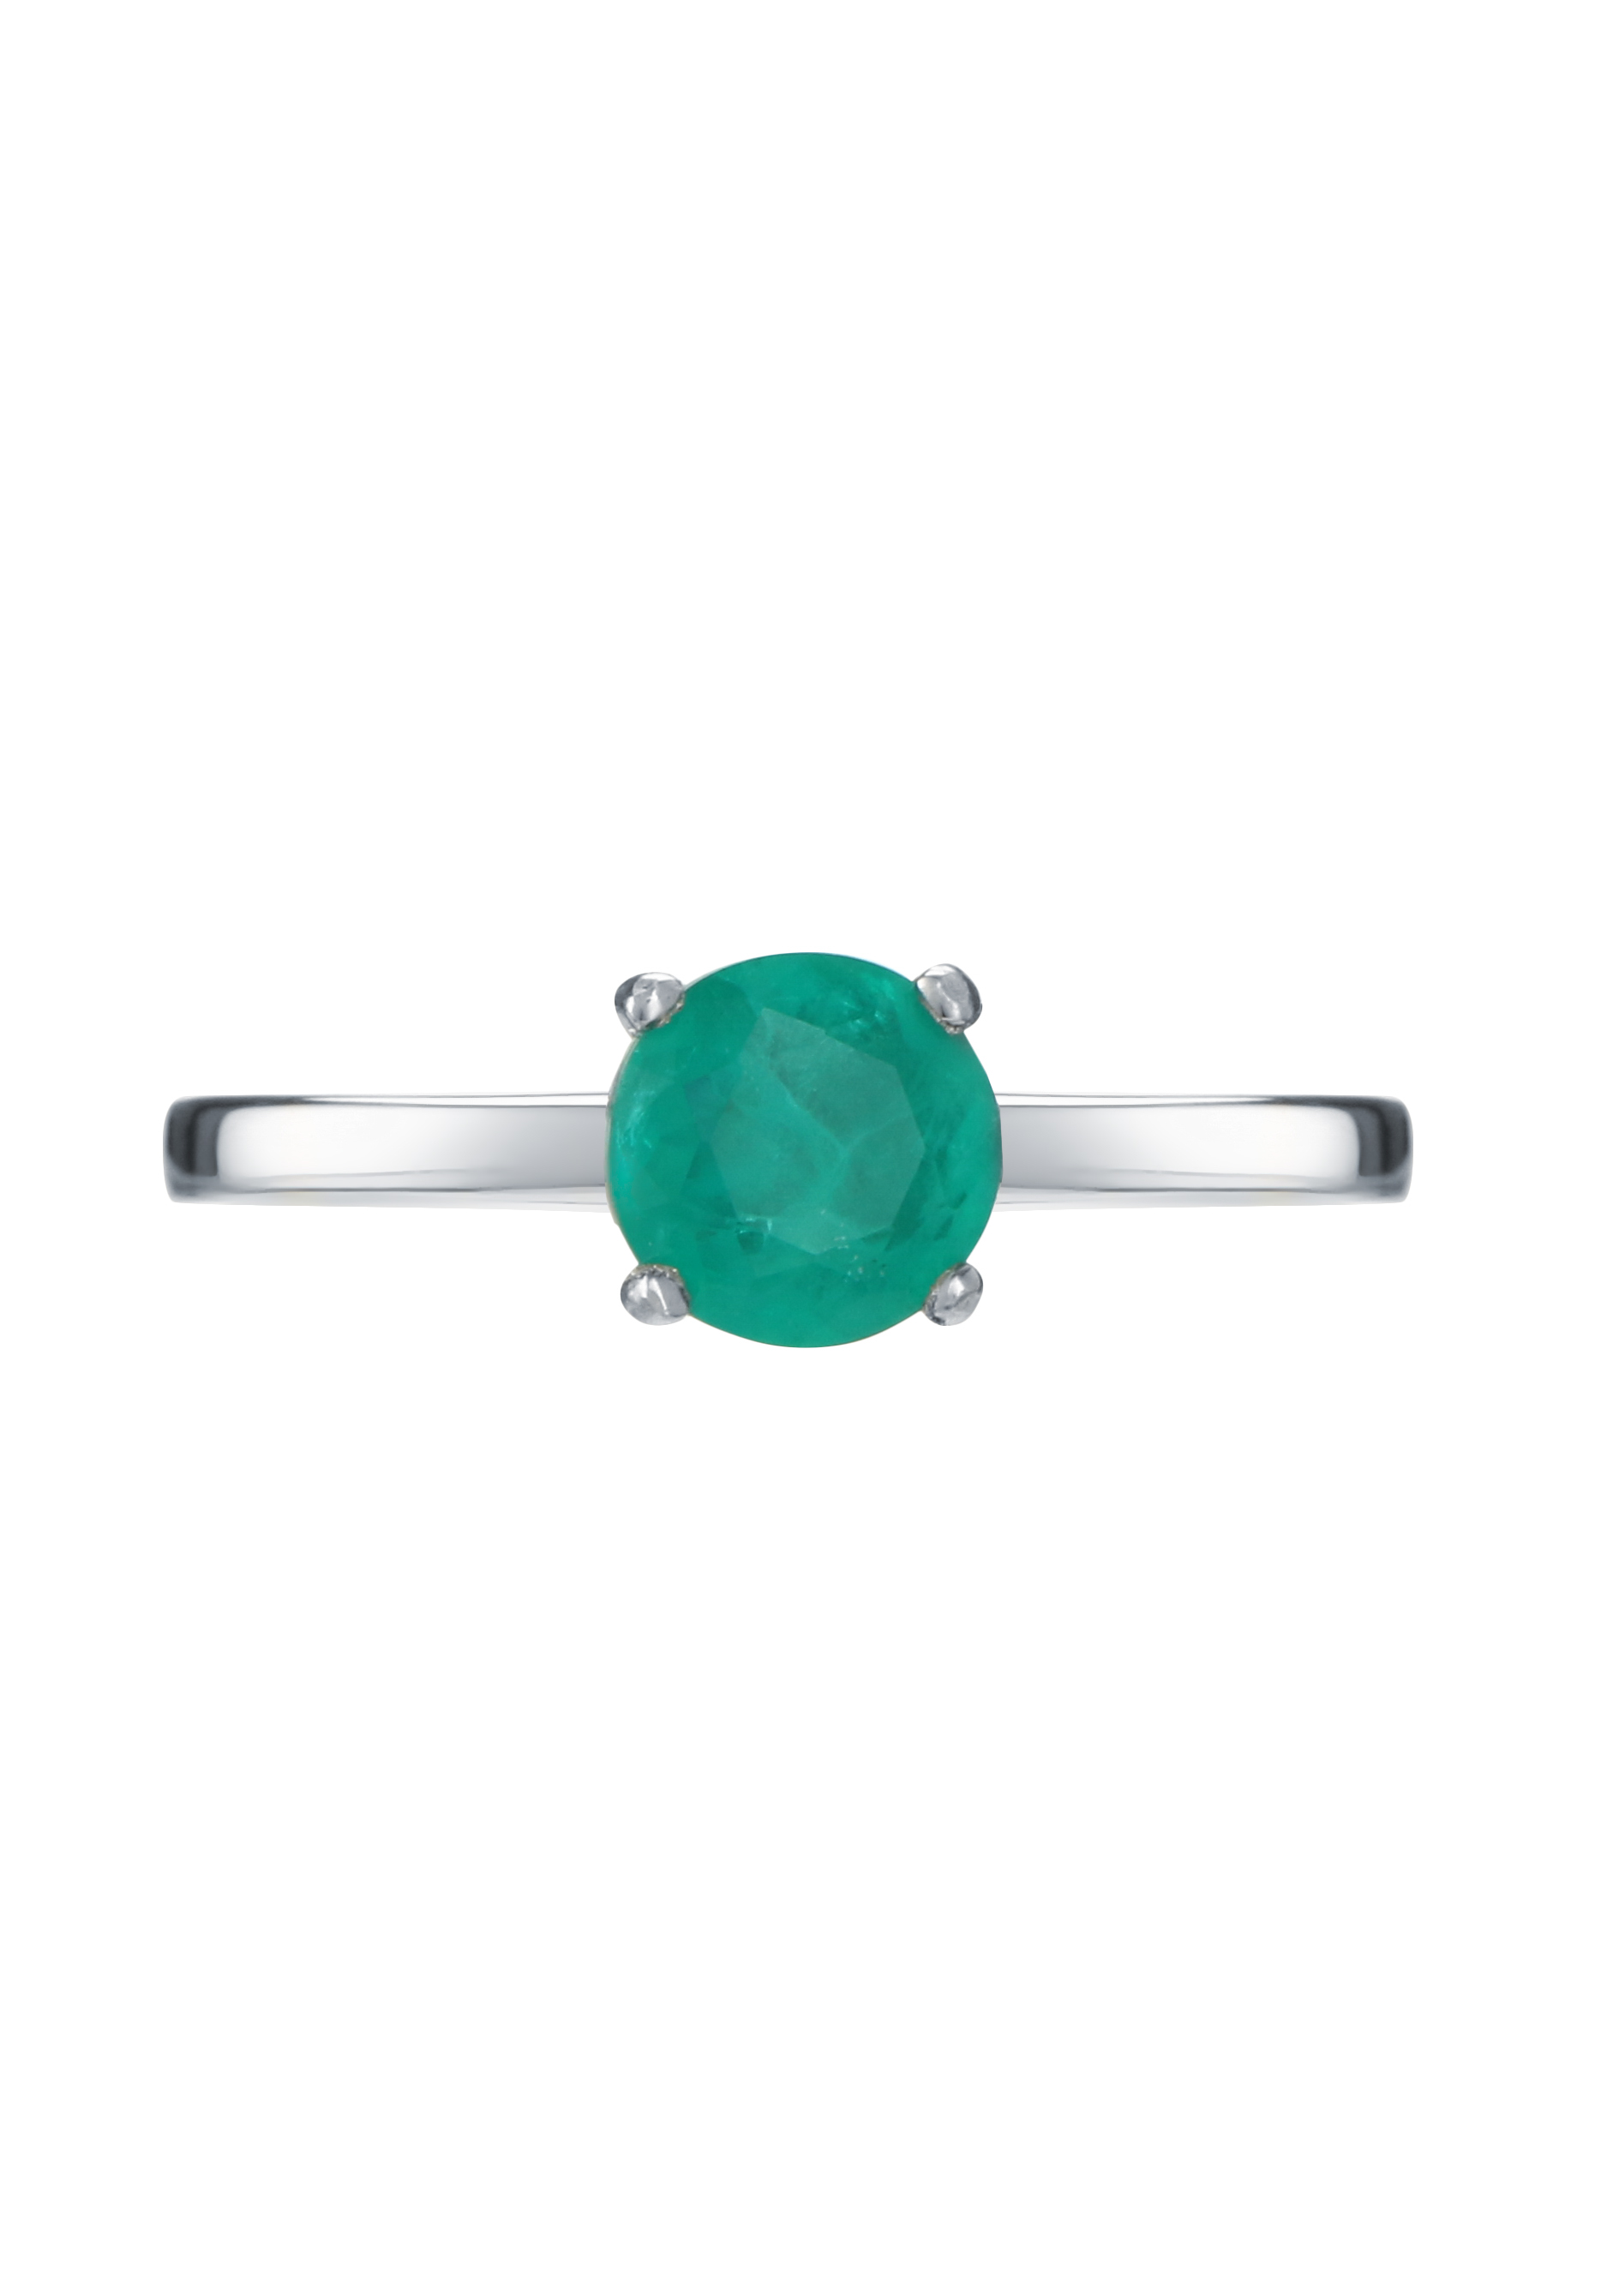 Кольцо серебряное "Сокровенная мечта" Nouvelle, размер 17, цвет зеленый солитер - фото 4